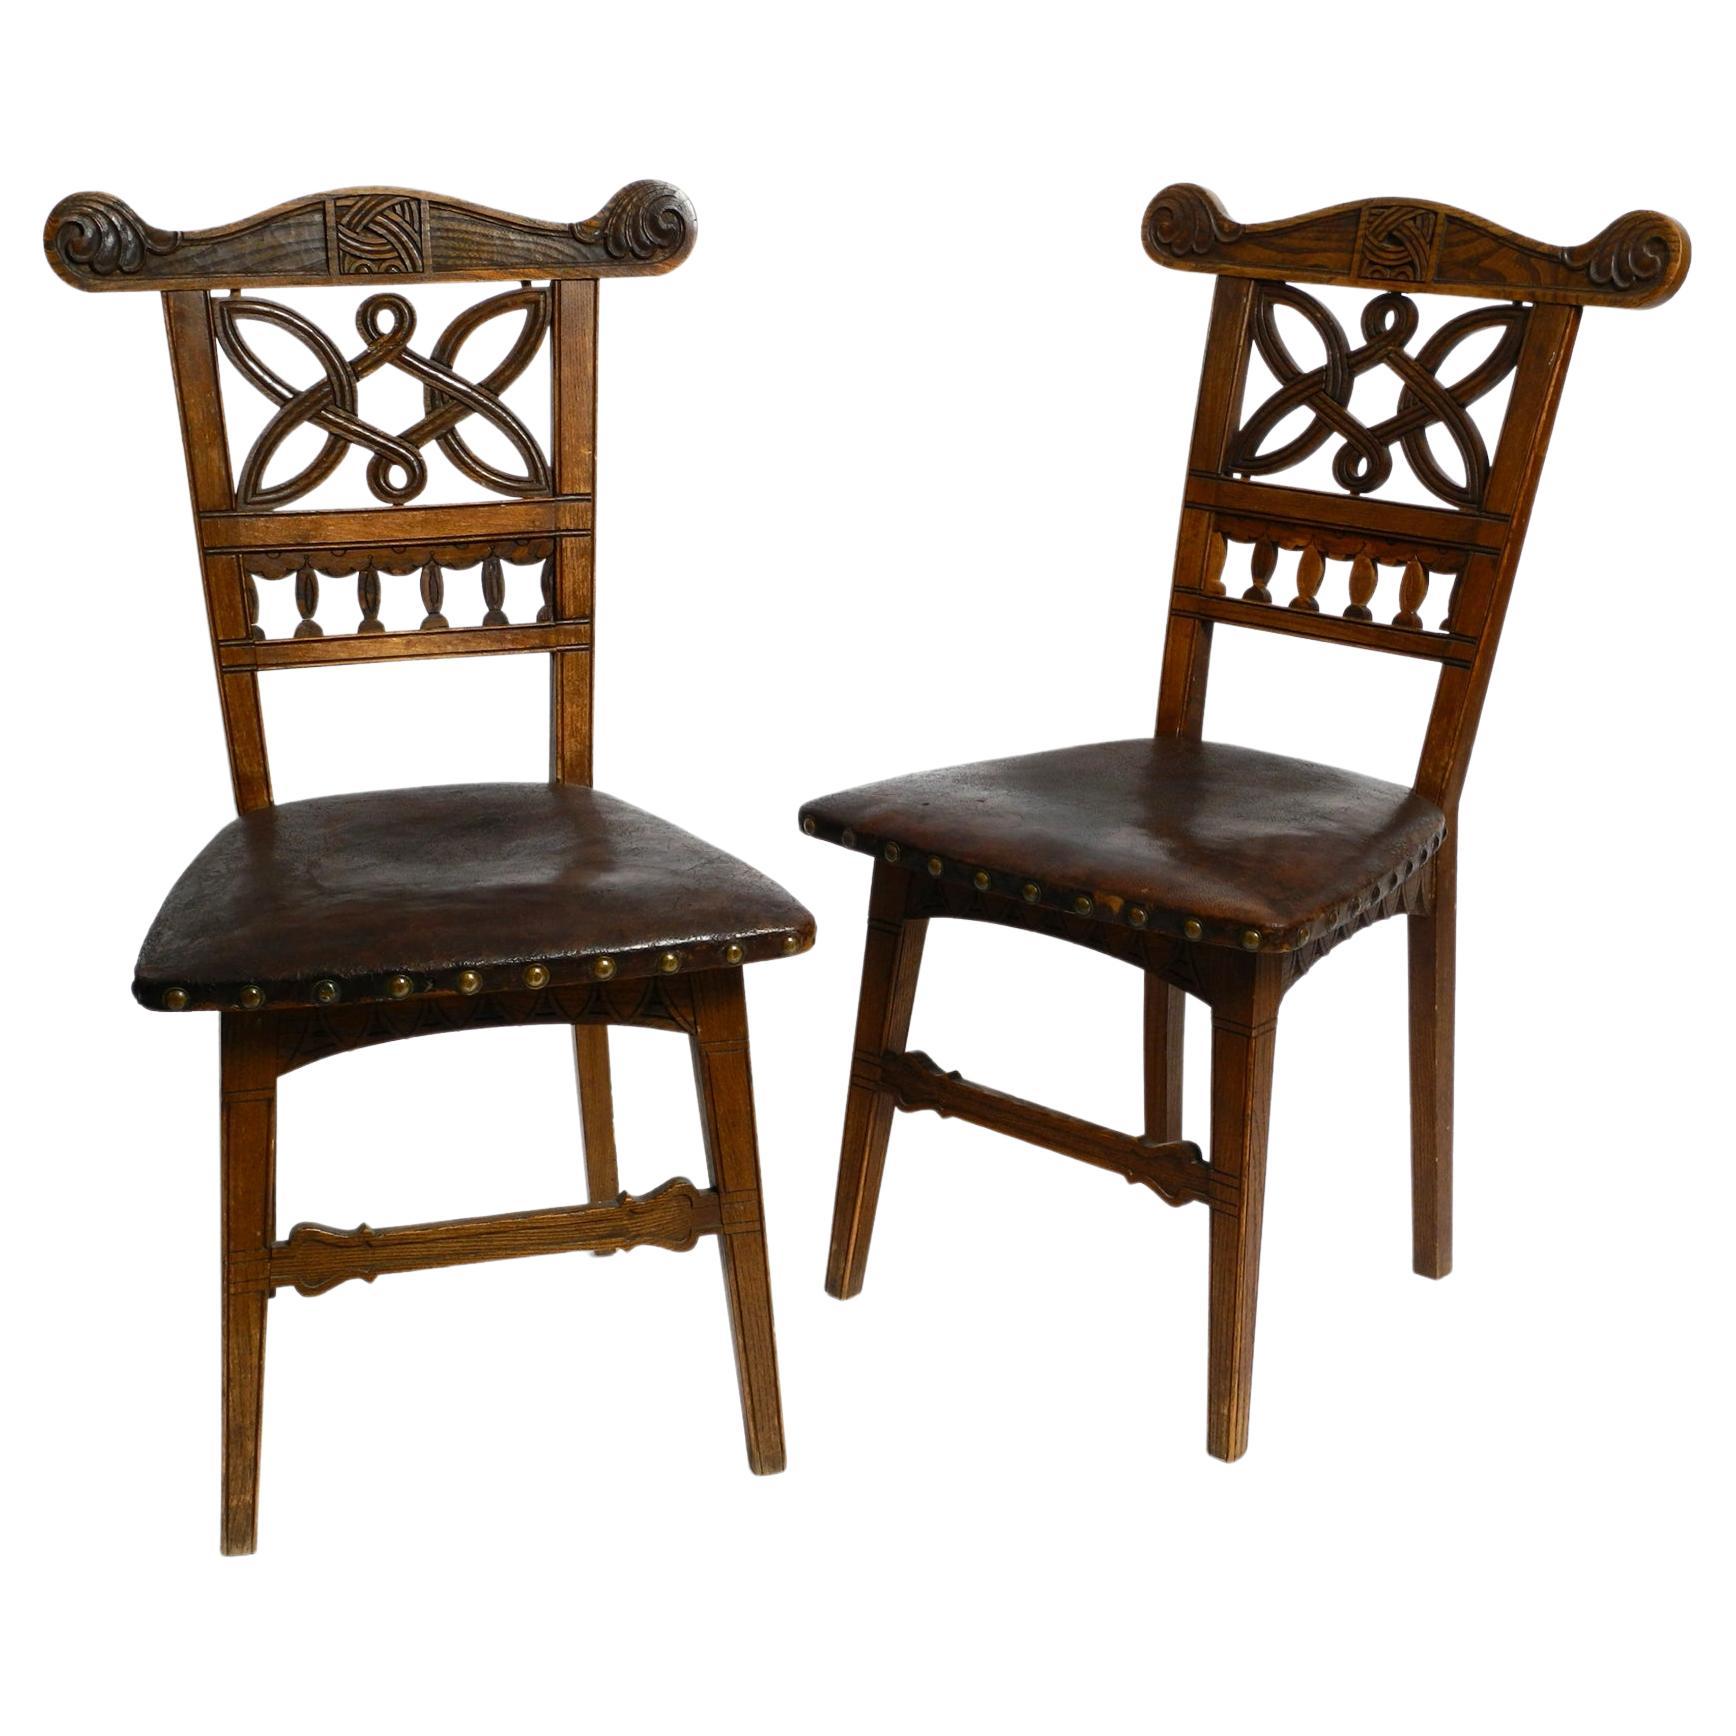 2 Chaises en chêne Art Nouveau avec sièges en cuir d'origine datant d'environ 1900